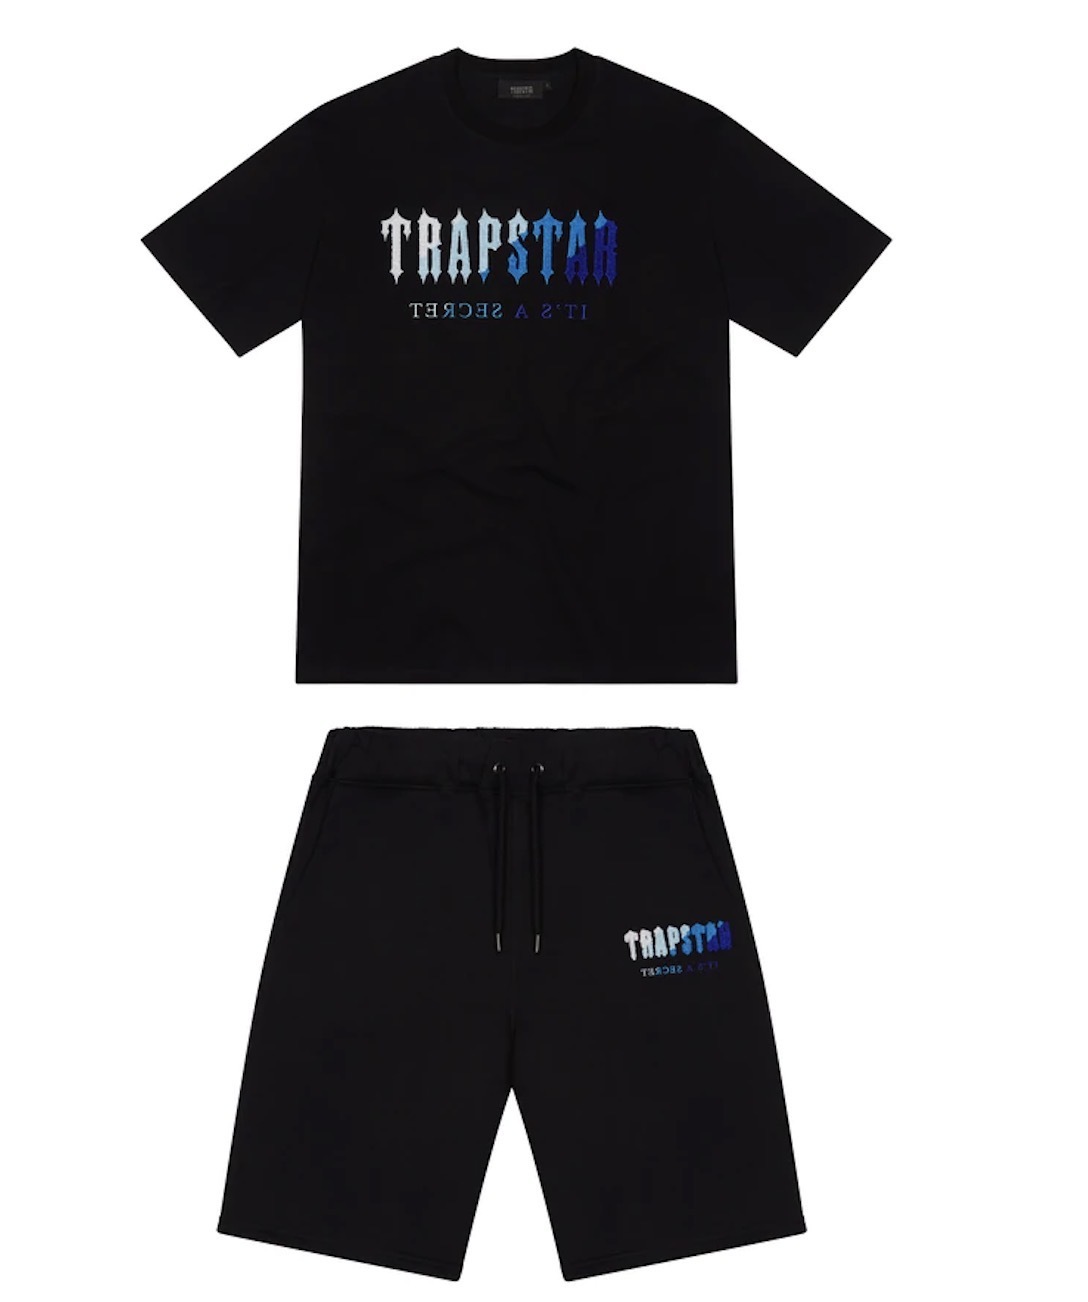 قميص رجالي Trapstar تي شيرت مطبوع بأكمام قصيرة بدلة رياضية شينيل قطن أسود من القطن لندن ستريتوير S-2XL